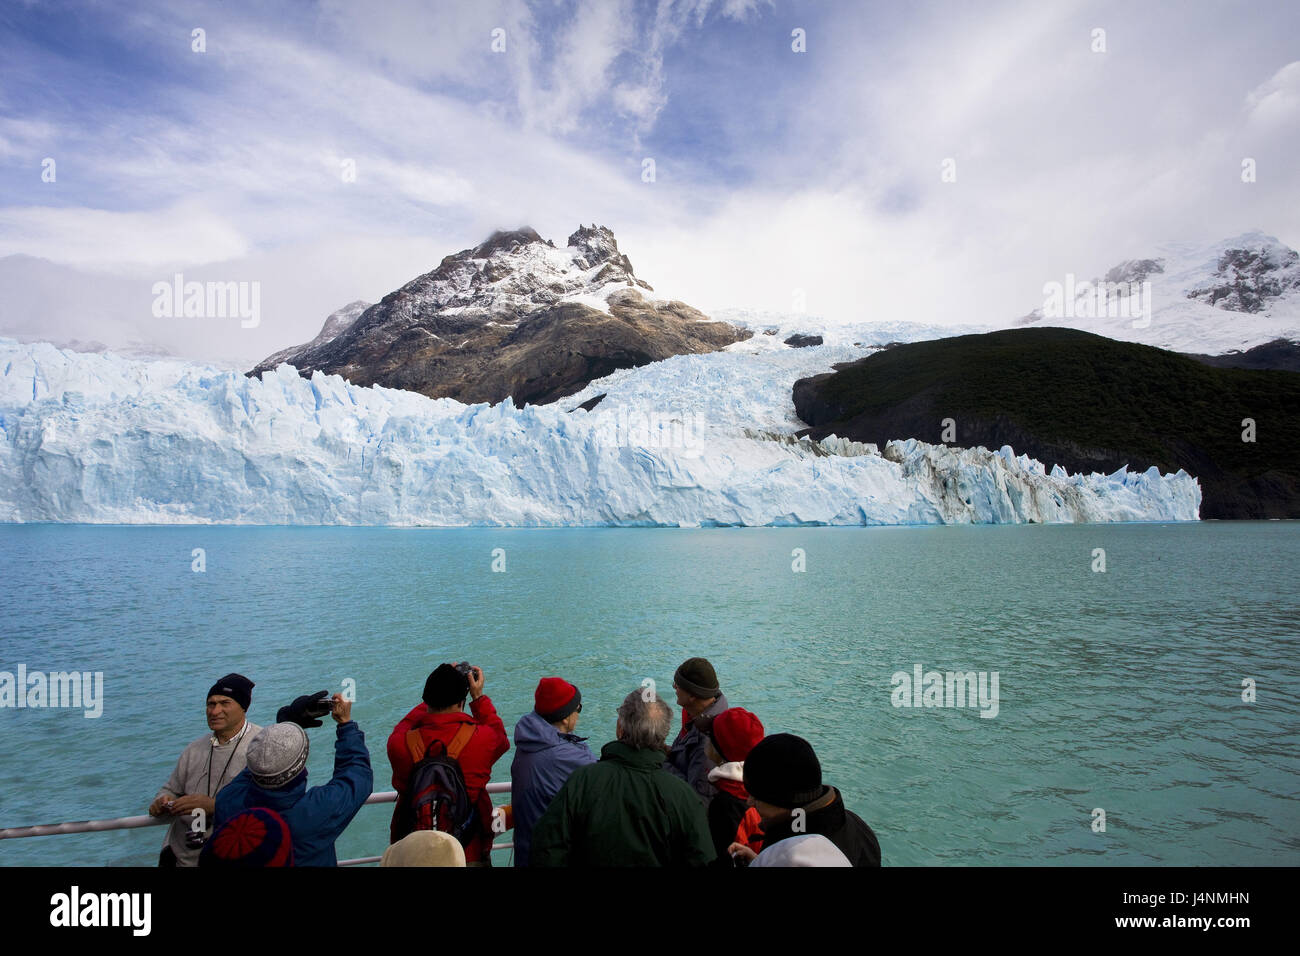 Argentina, Patagonia, Lago Argentino, Spegazzini glacier, glacier tongue, boat, tourist, no model release, Stock Photo